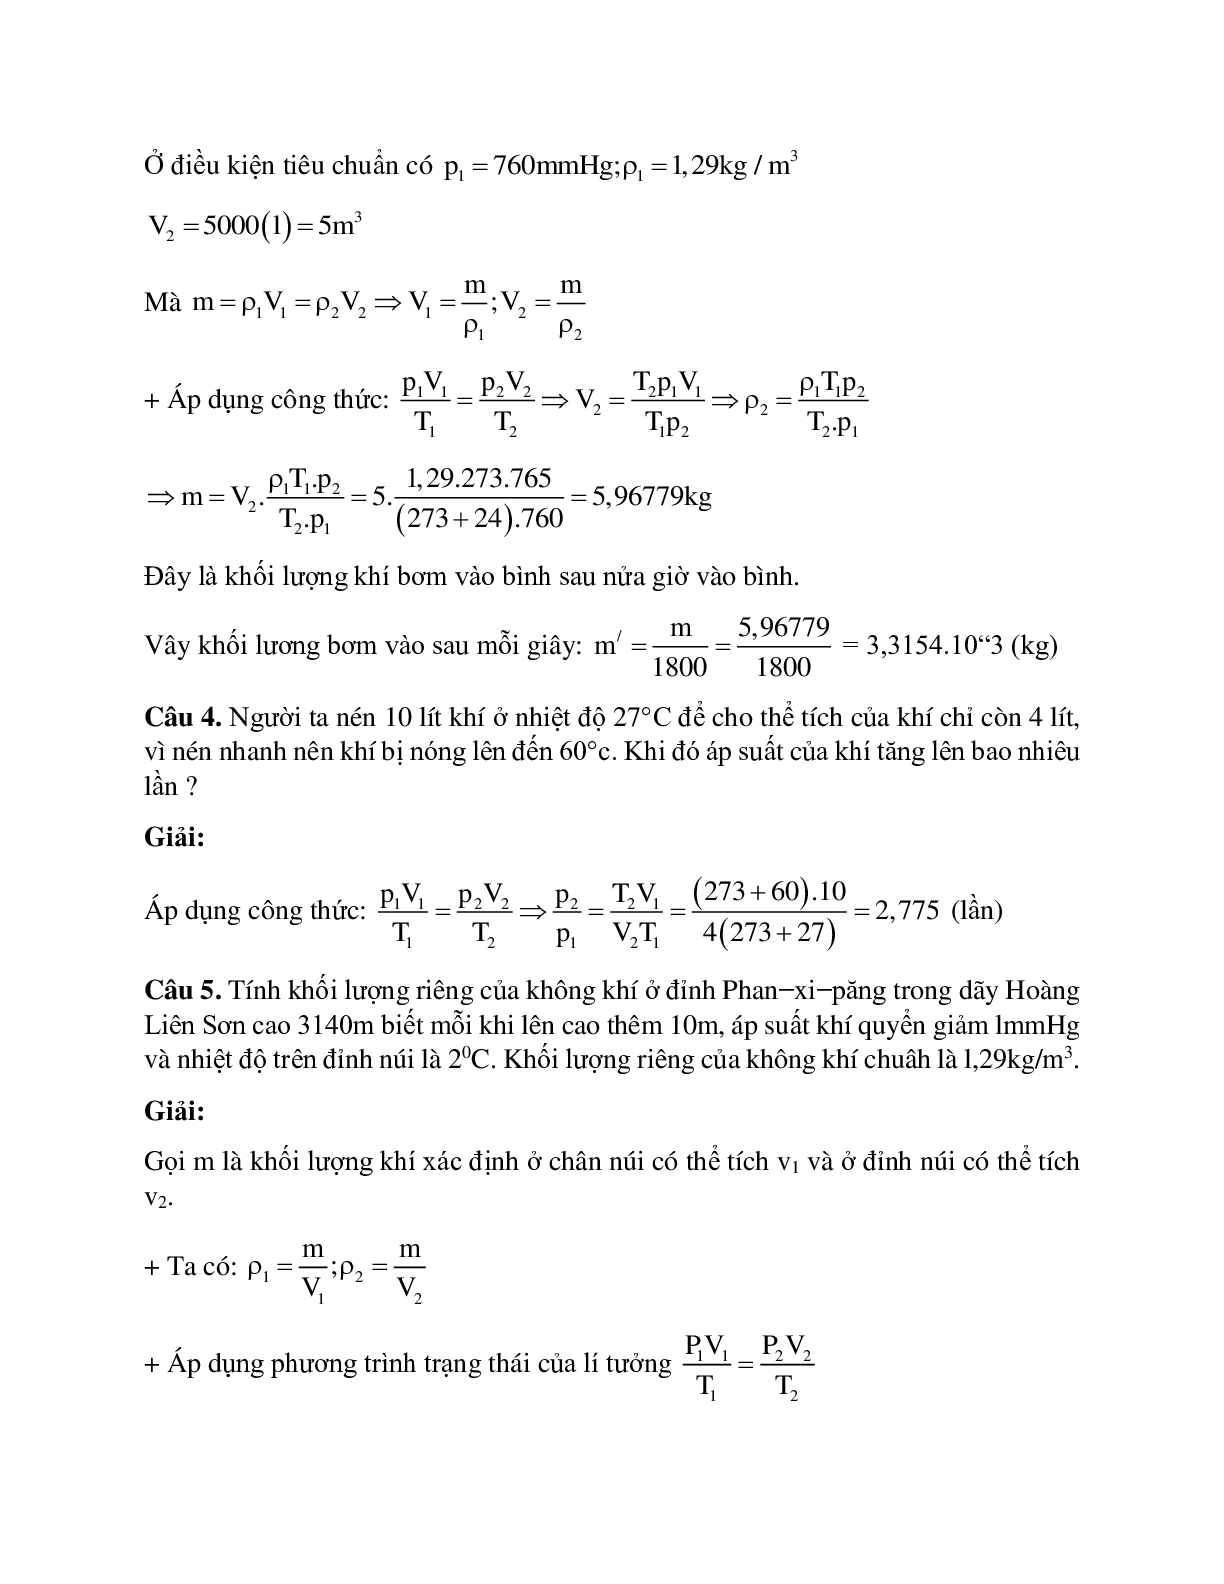 Bài tập về phương trình trạng thái khí lý tưởng có lời giải (trang 2)